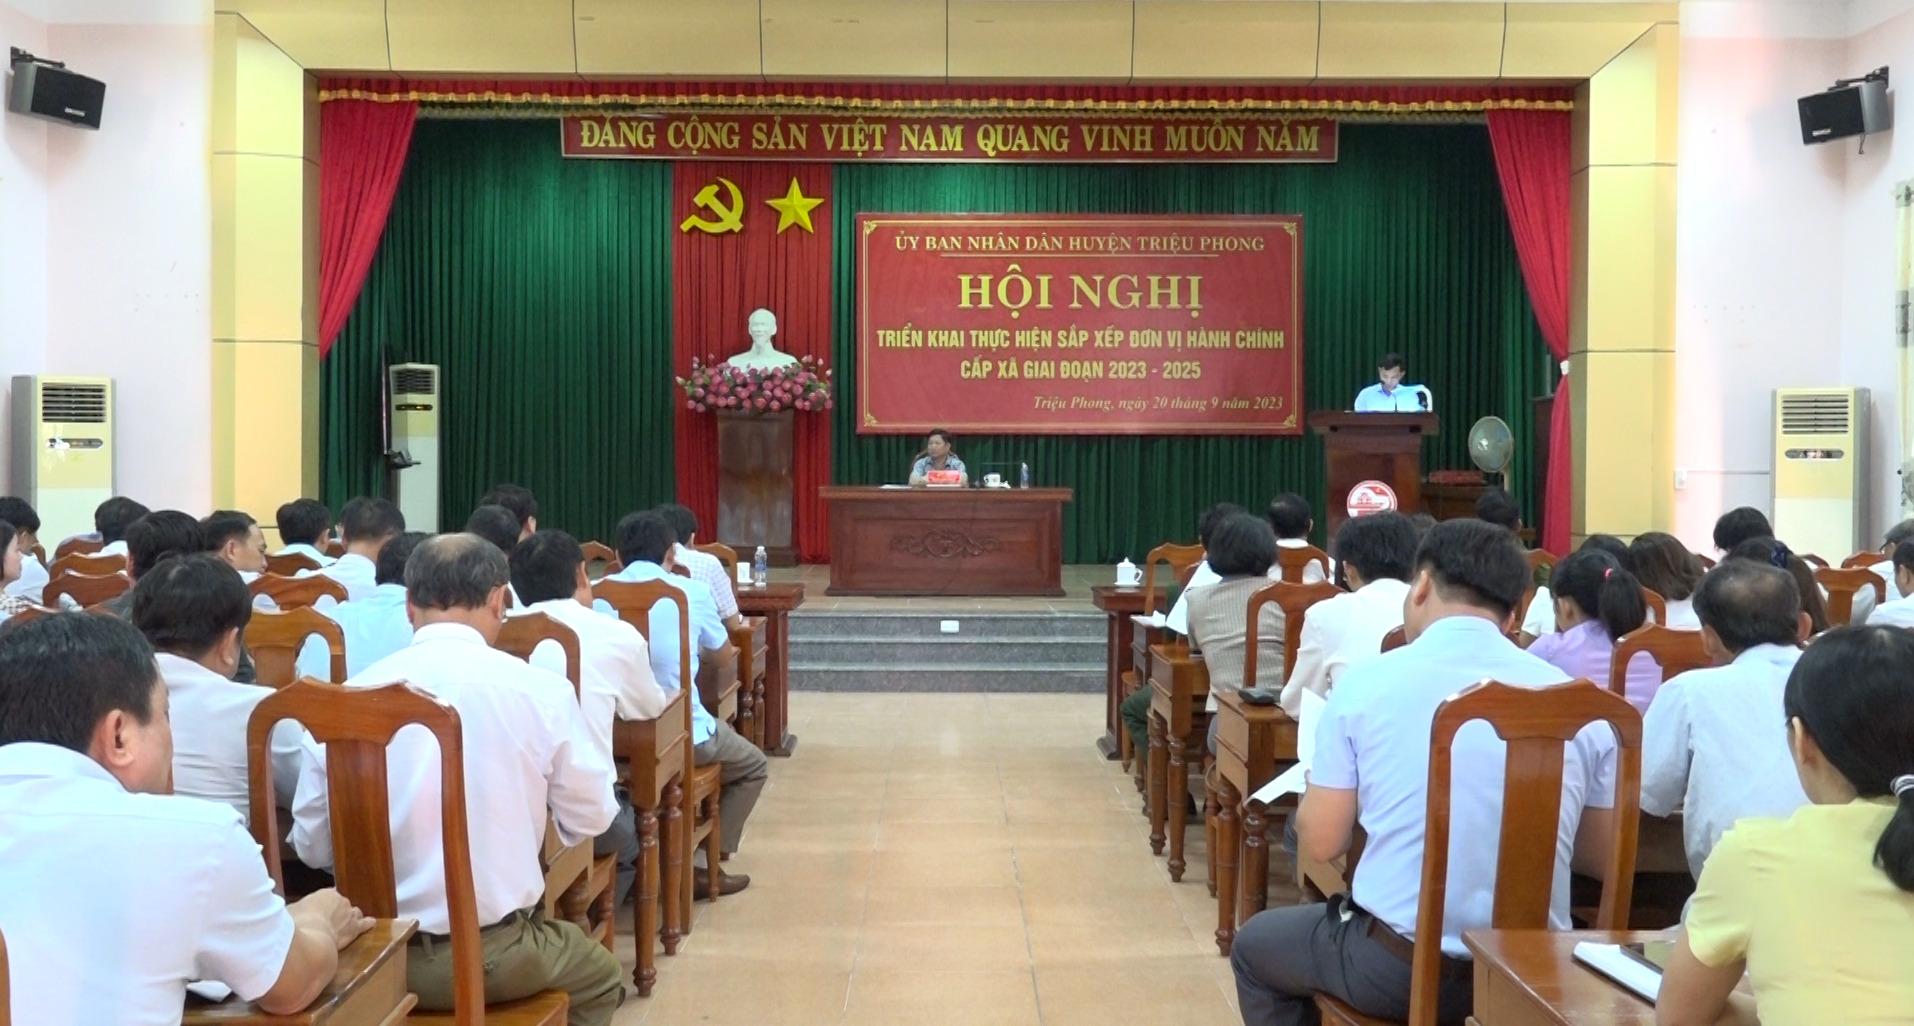 UBND huyên Triệu Phong tổ chức hội nghị triển khai...